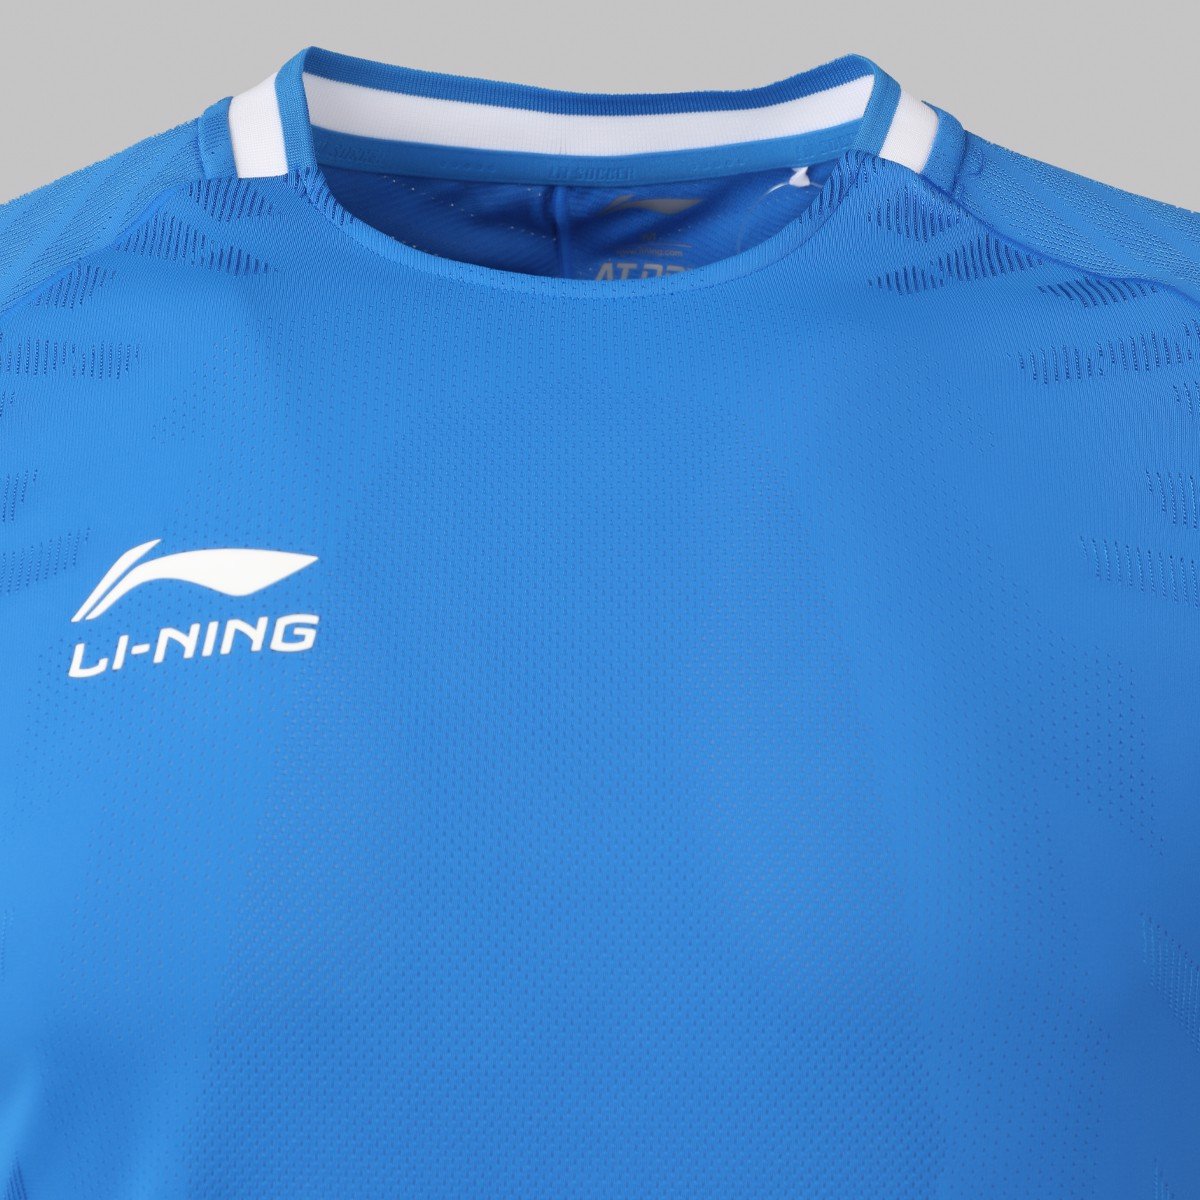 Bộ quần áo bóng đá thể thao Li-Ning nam AATS037-2 - L